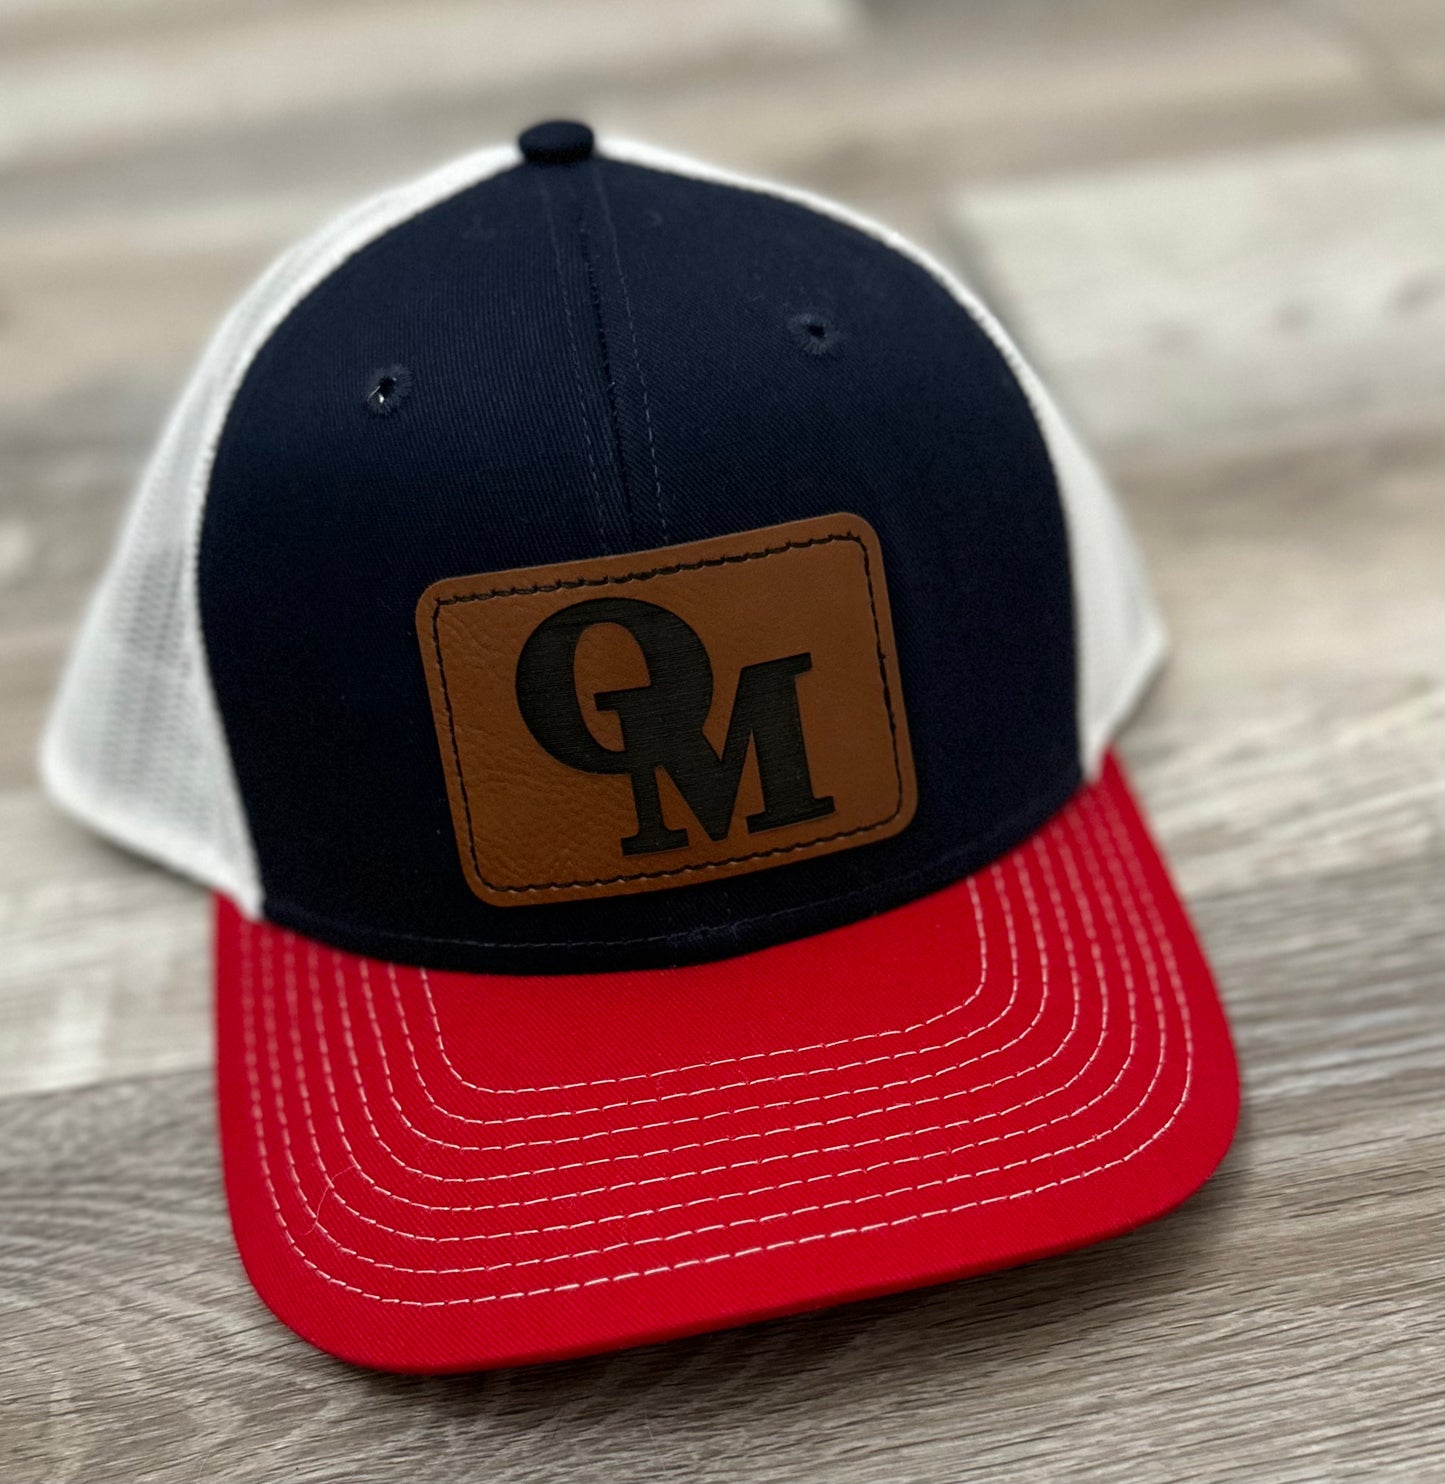 Navy/red/white structured trucker hat